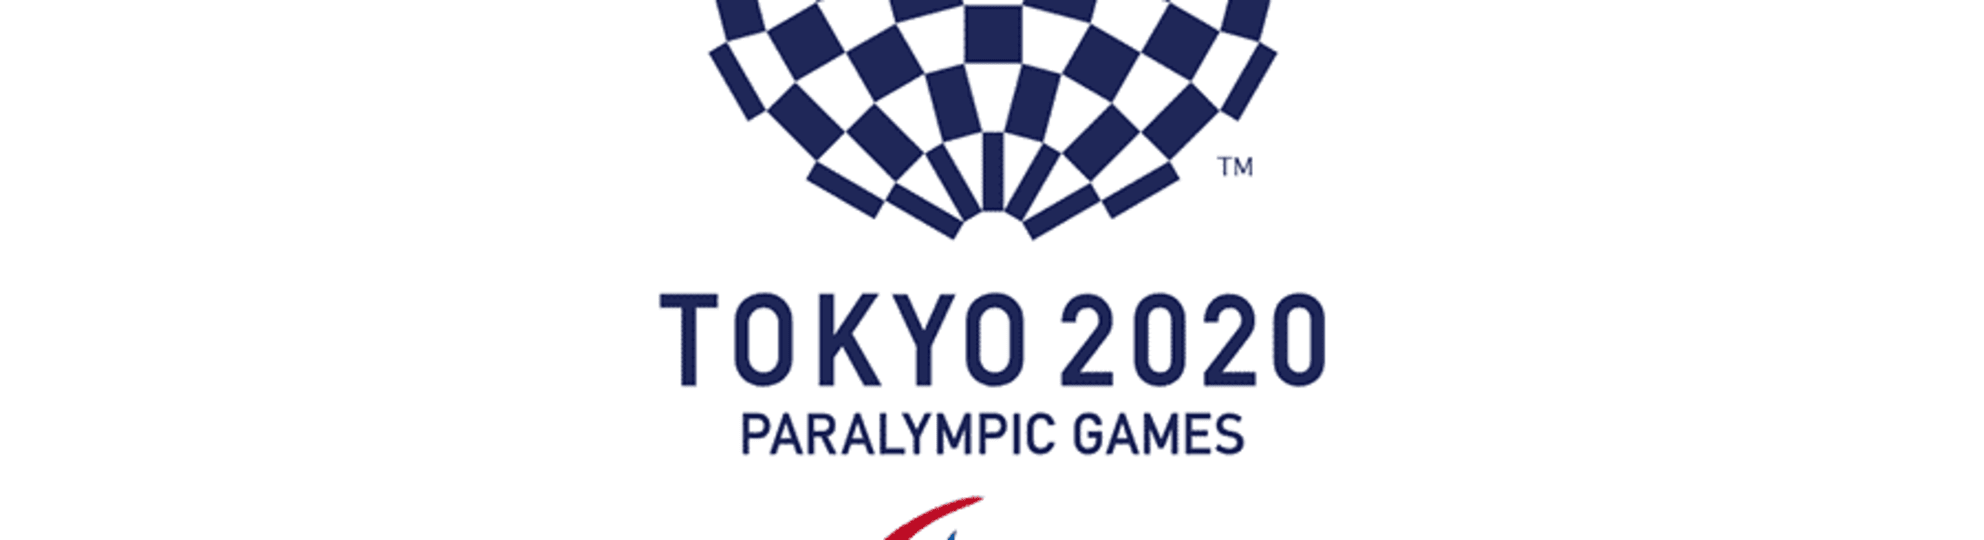 2020 paralympic tokyo Tokyo 2020